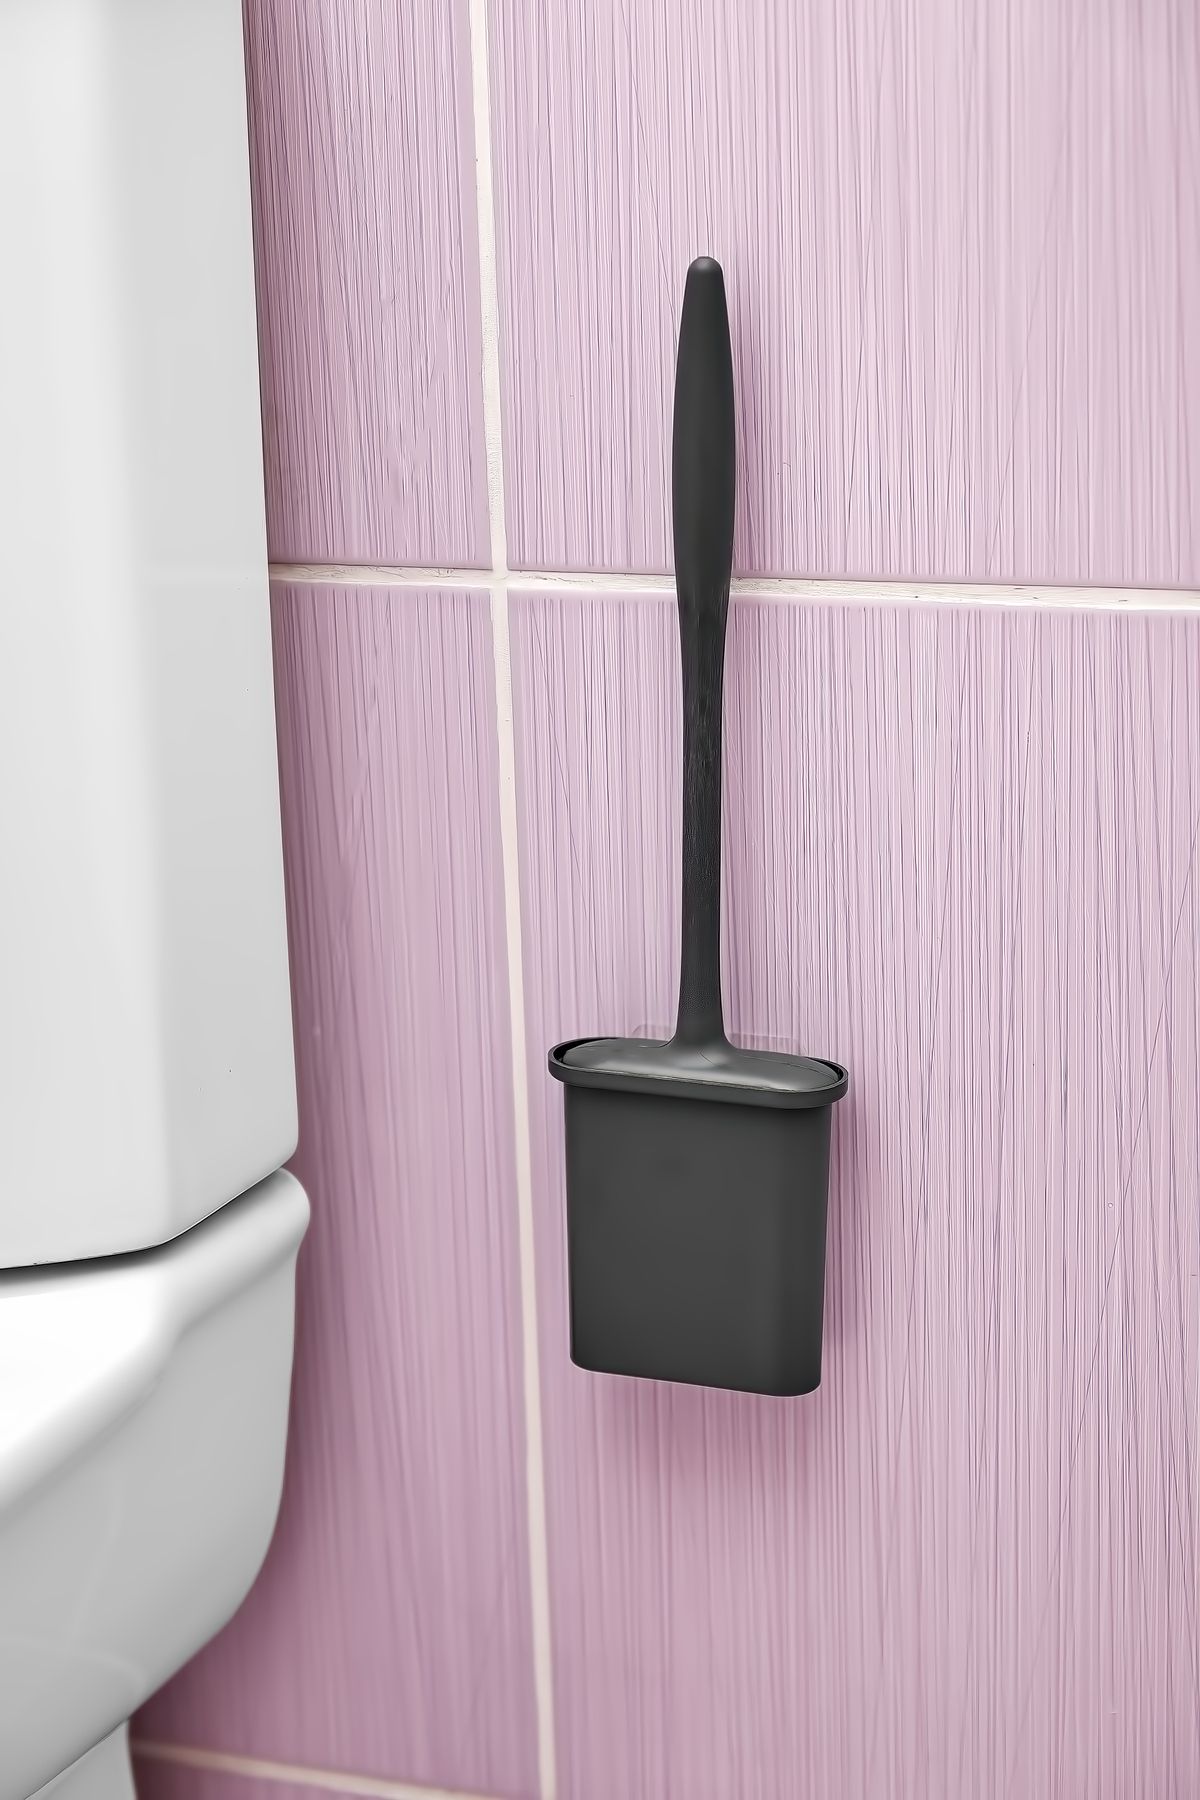 Self Power Siyah Renk Silikon Duvara Yapışan Bükülebilir Pratik Silikon Wc Klozet ve Tuvalet Fırçası